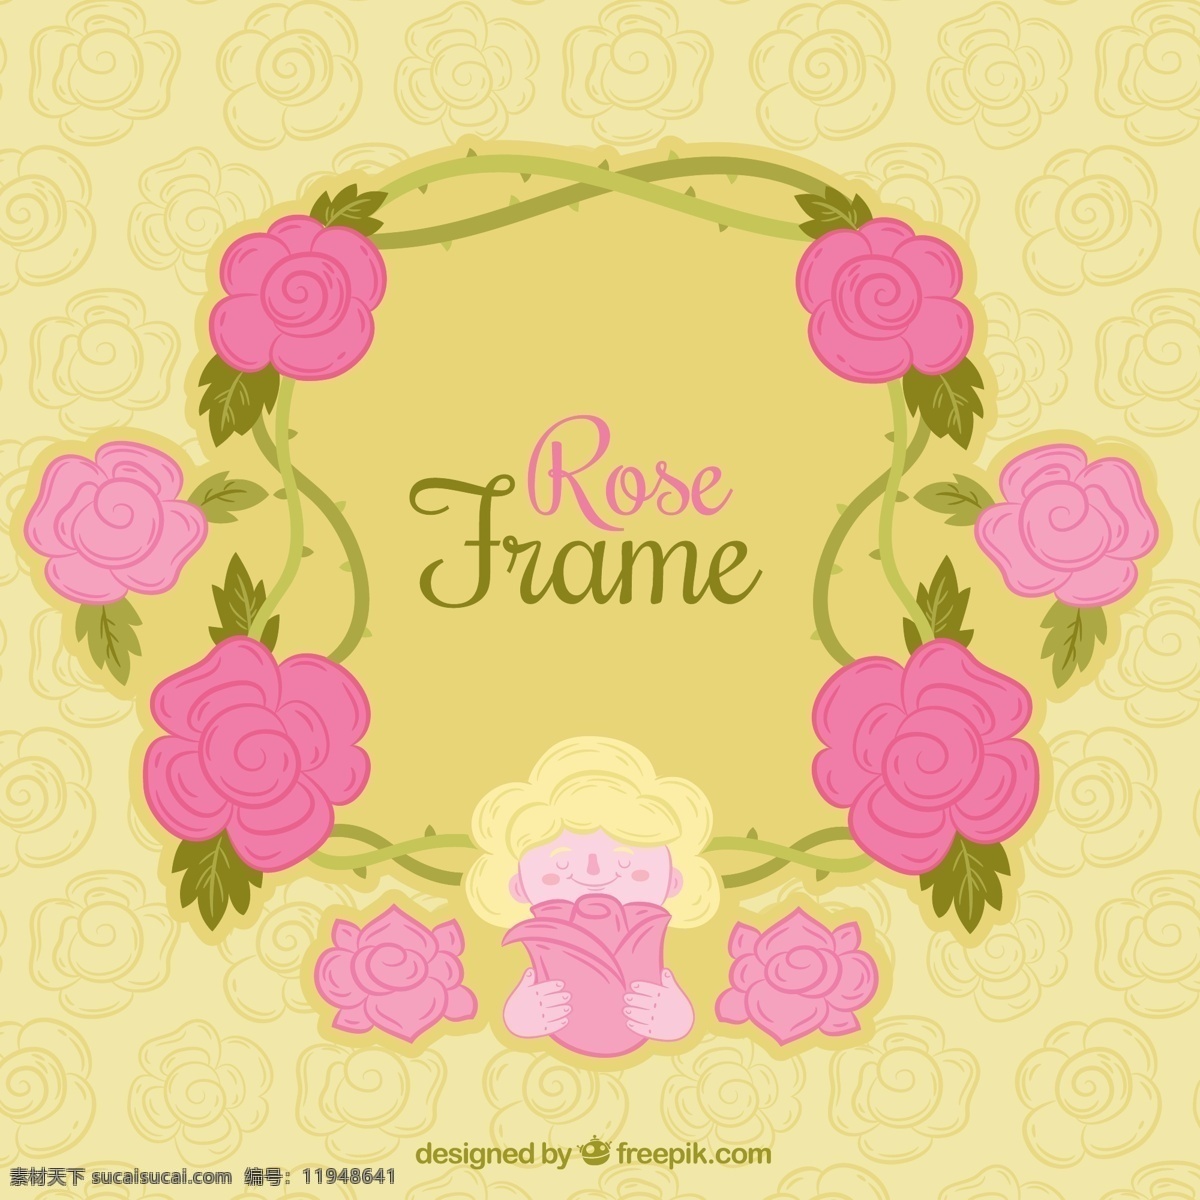 粉红色 玫瑰 围 成 好看 边框 矢量 设计素材